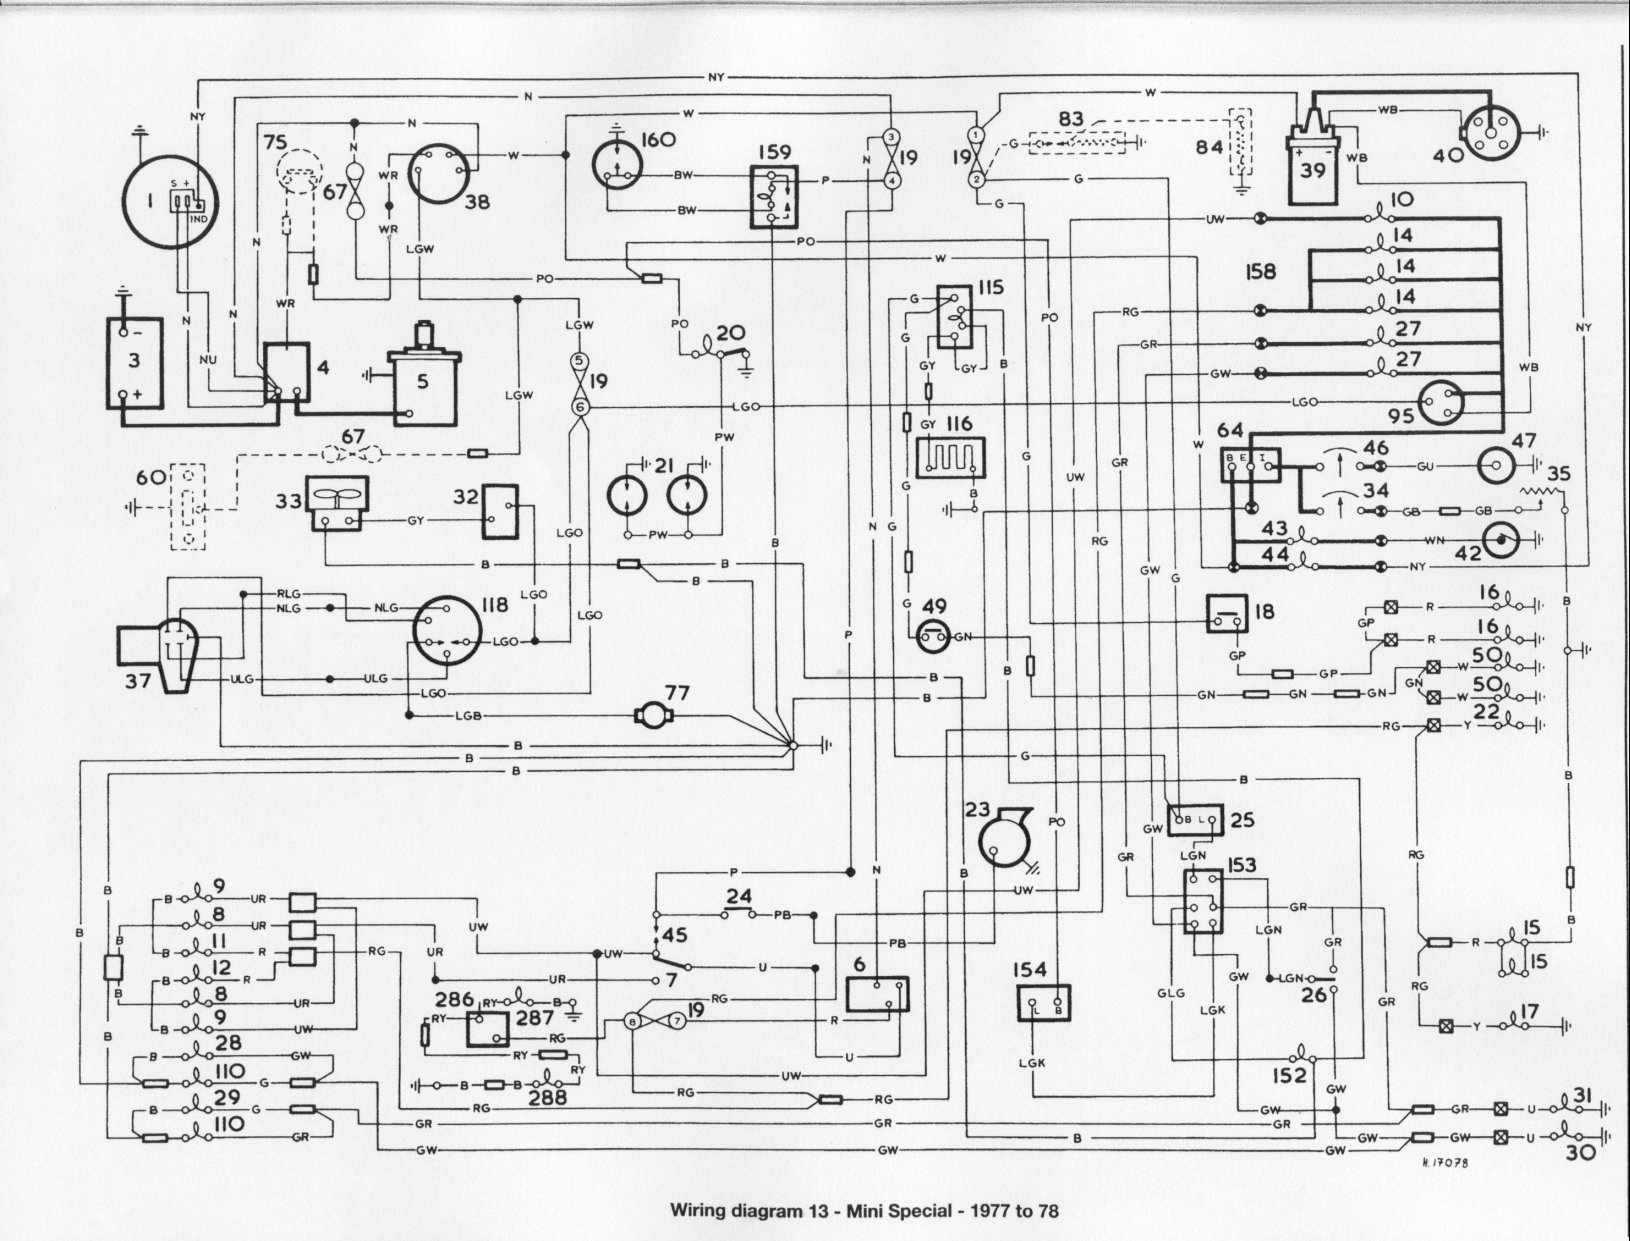 1977 WiringDiagram